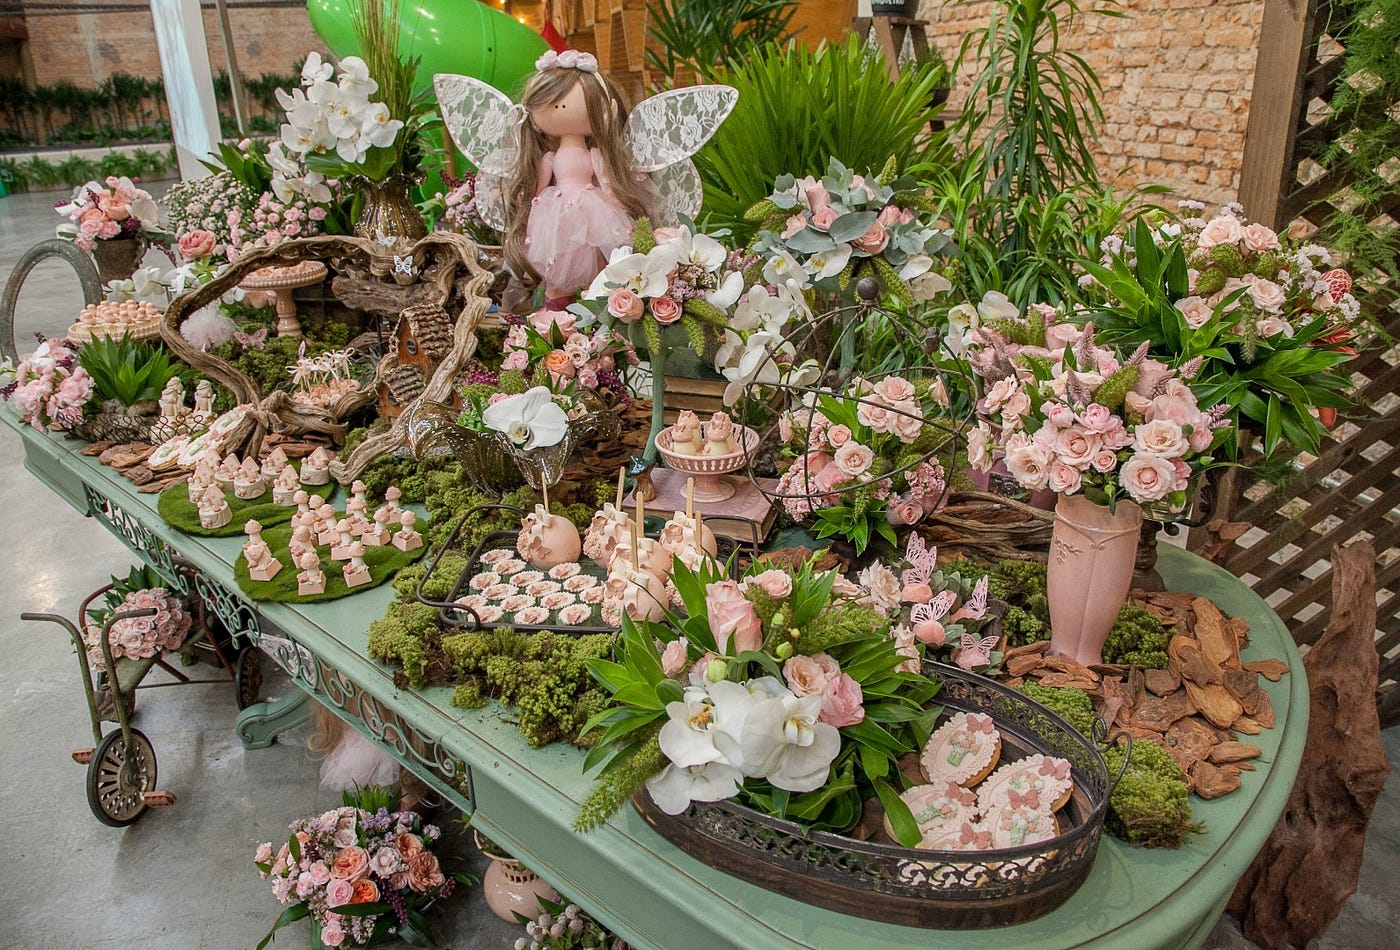 Sitting Fairy Tera Fairy Garden, Fairy Accessories, Miniature